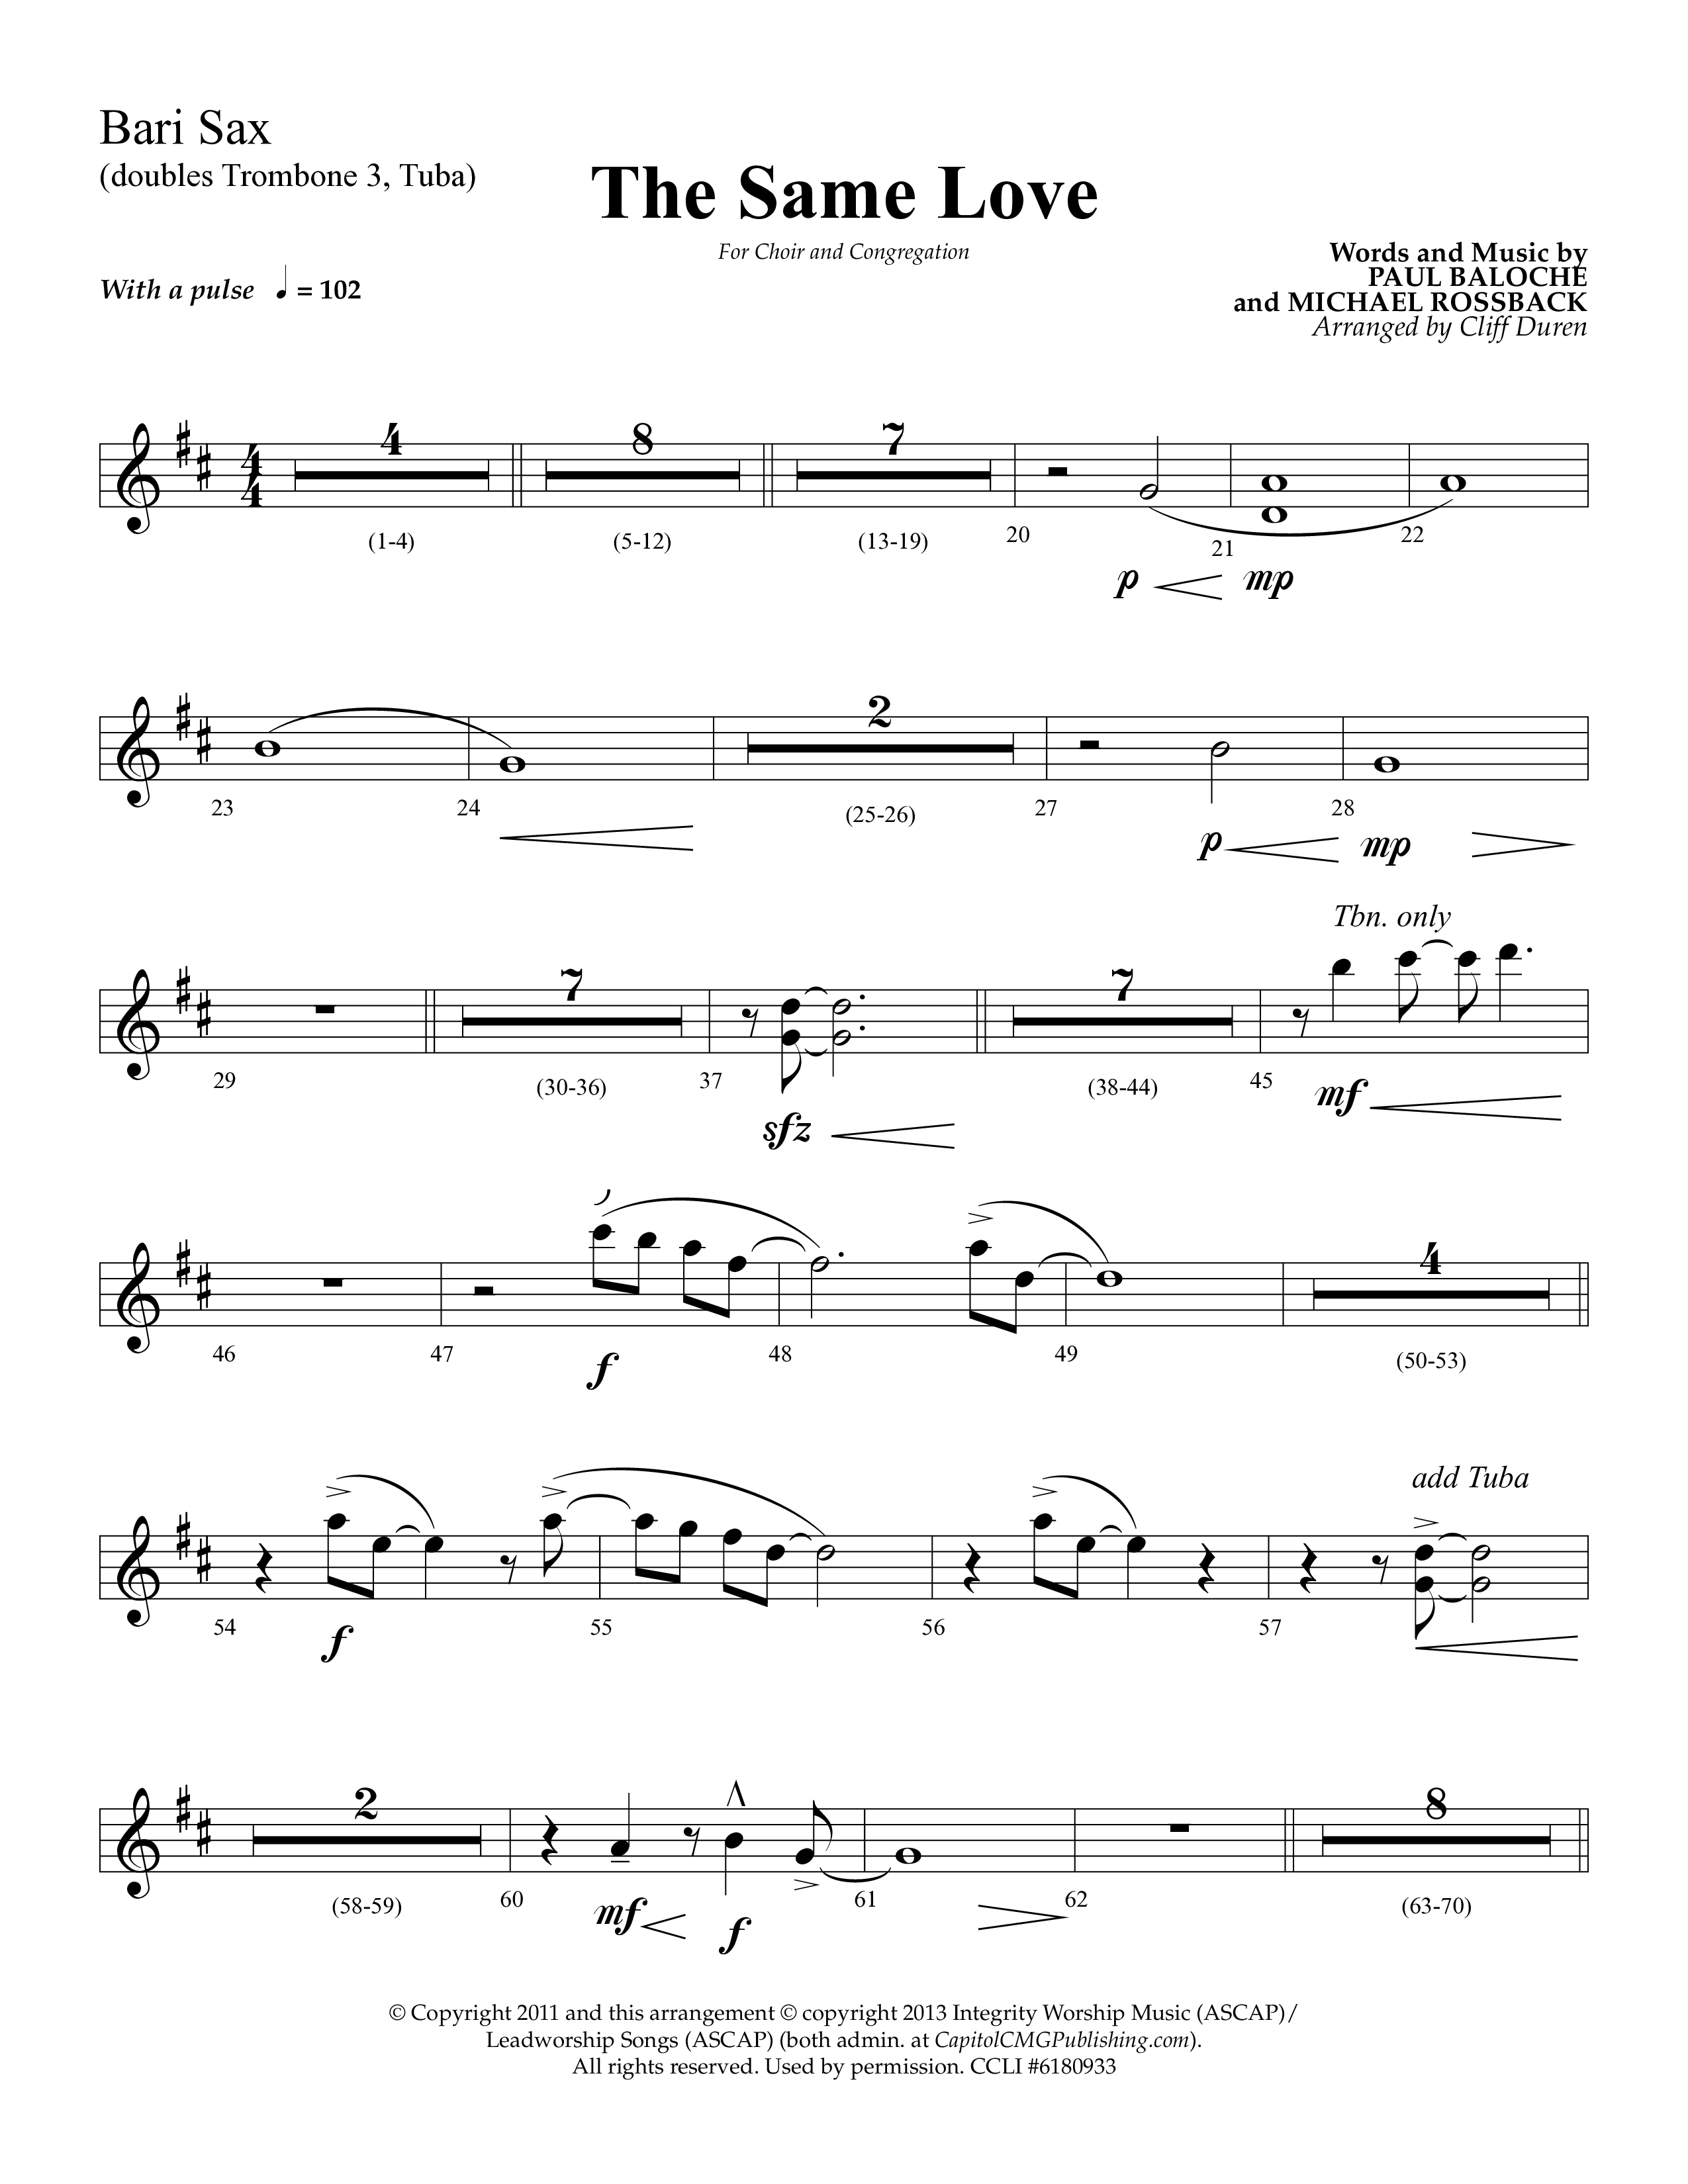 The Same Love (Choral Anthem SATB) Bari Sax (Lifeway Choral / Arr. Cliff Duren)